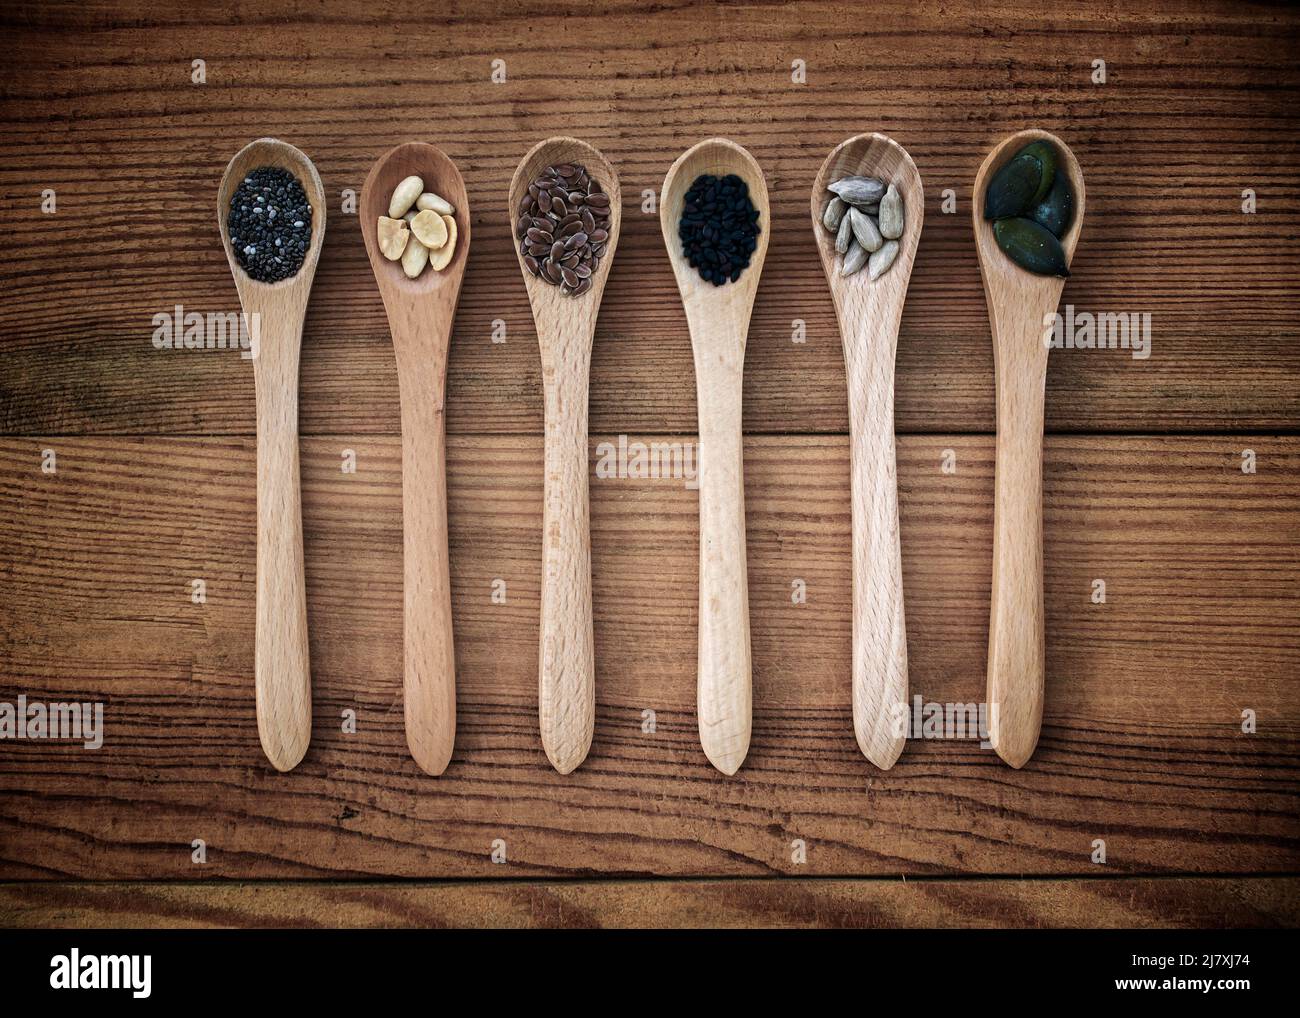 Conjunto de semillas orgánicas en cucharas sobre fondo de madera, alimentos naturales saludables y concepto de nutrición Foto de stock